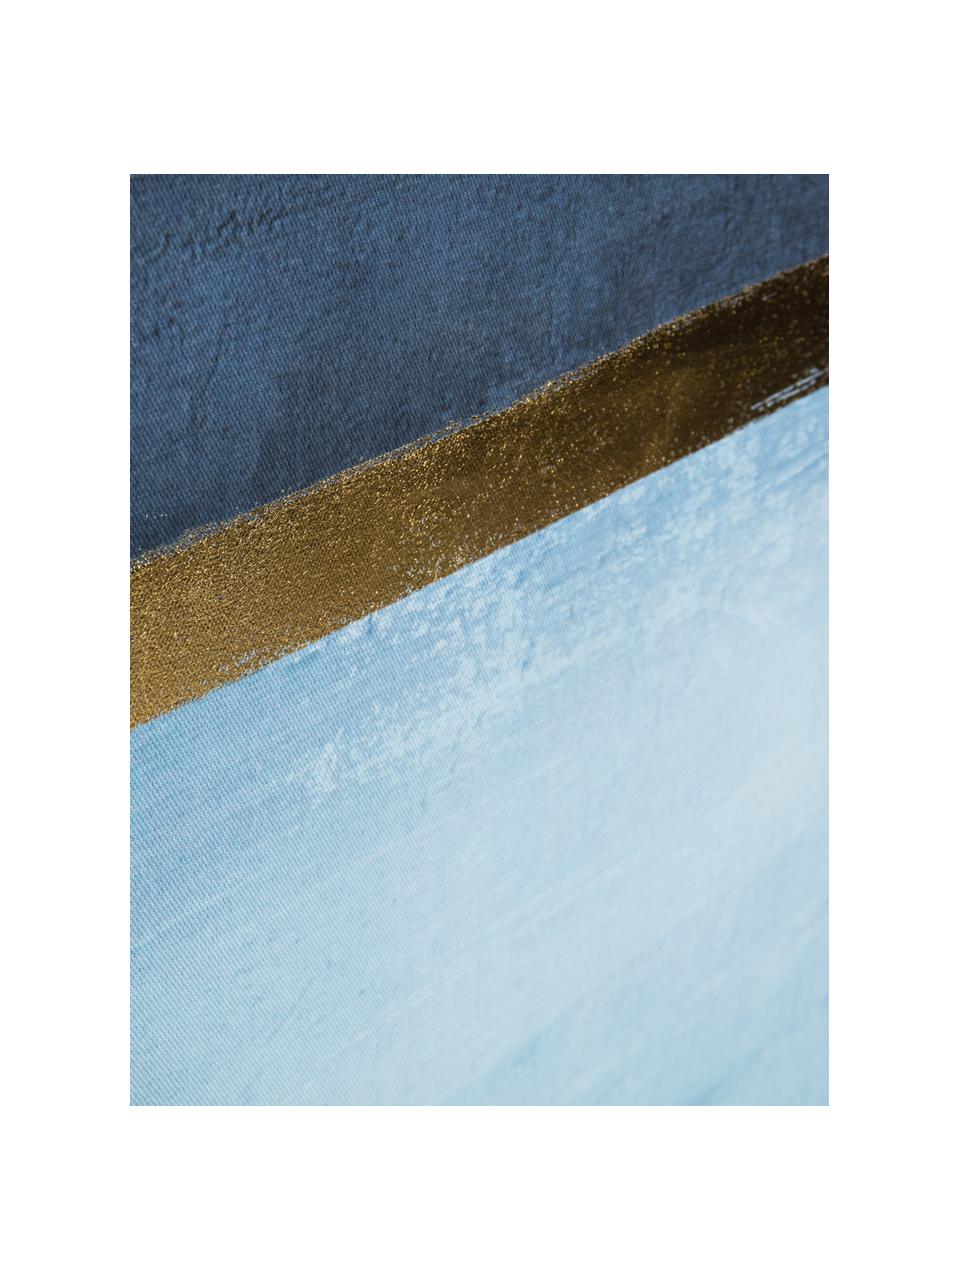 Stampa su tela Wrigley, Cornice: pannello di fibra a media, Immagine: tela, Tonalità blu, dorato, Larg. 60 x Alt. 90 cm